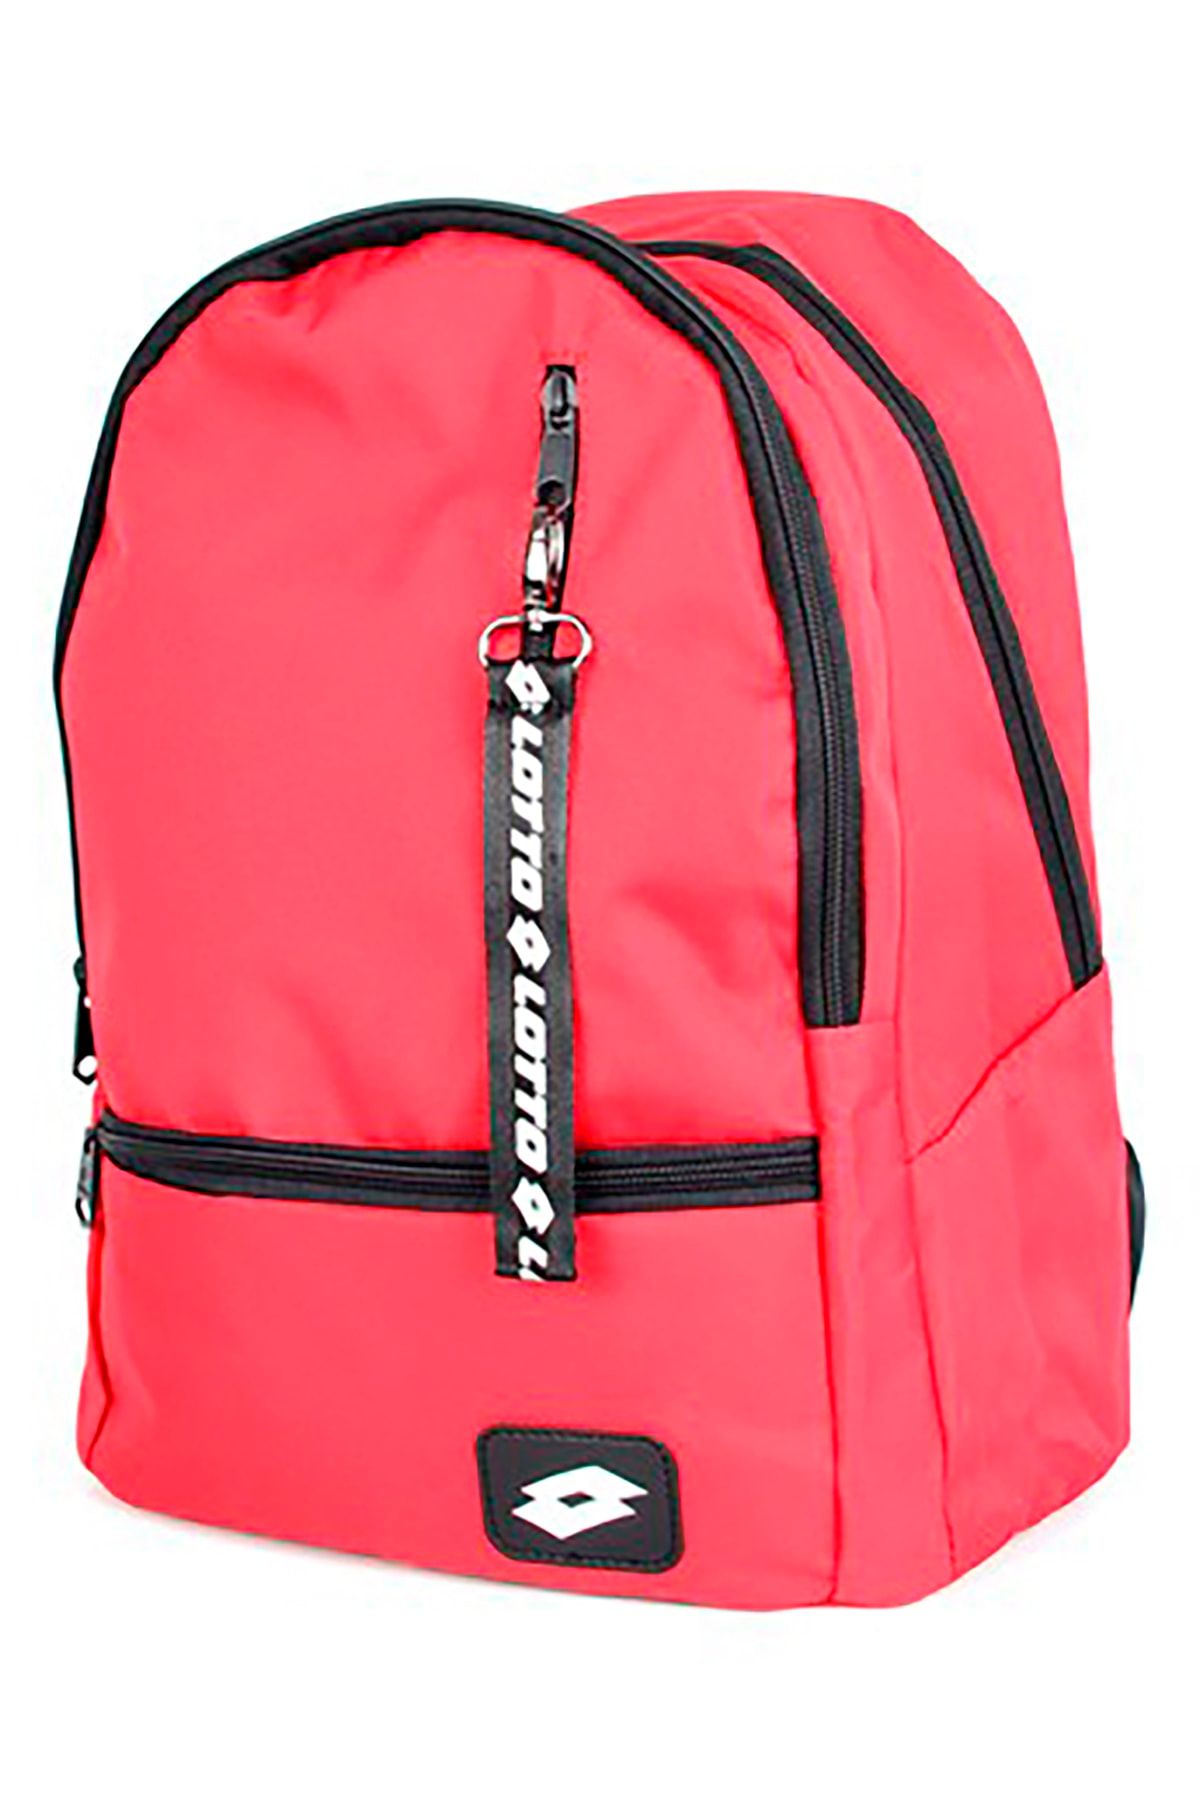 Lotto Unisex Kırmızı Gamet Backpack Sırt Çantası R5226